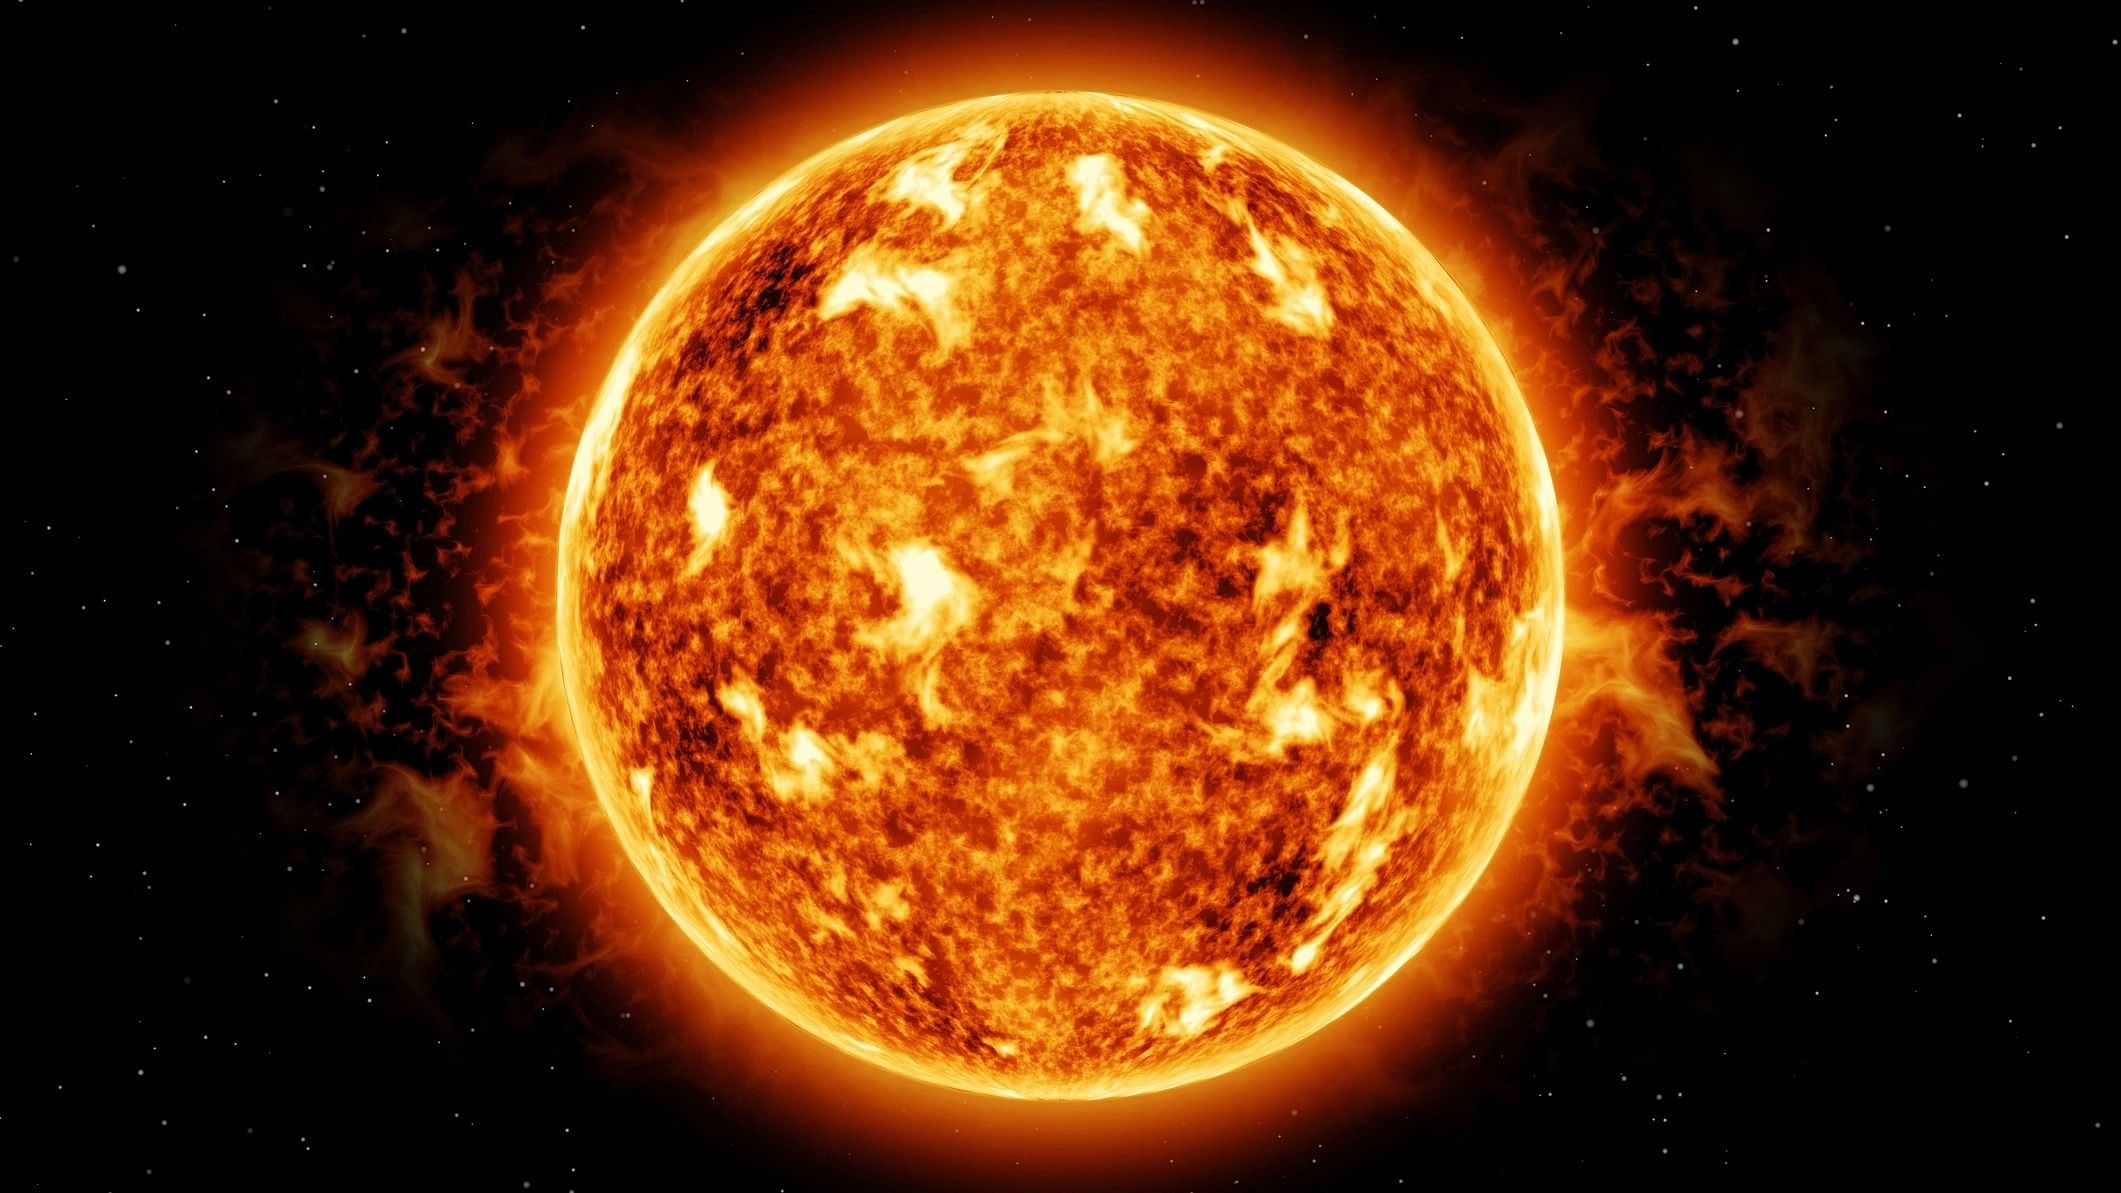 <div class="paragraphs"><p>Representative image of the sun.</p></div>